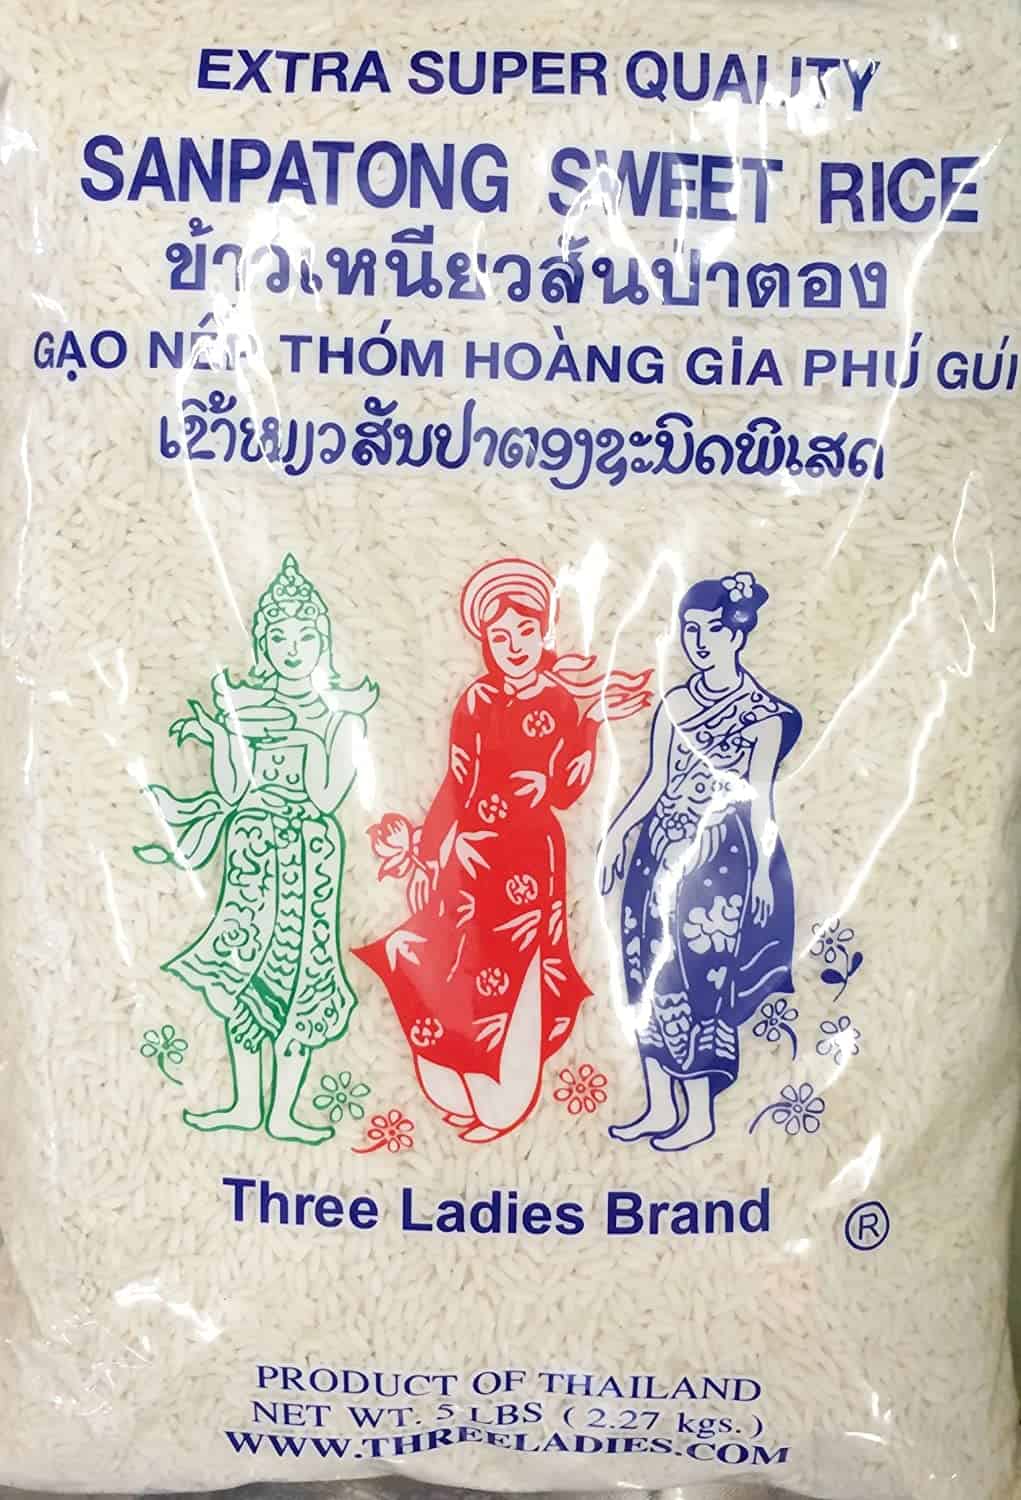 Paras pitkäjyväinen riisi: Three Ladies Brand Sanpatong Sweet Rice